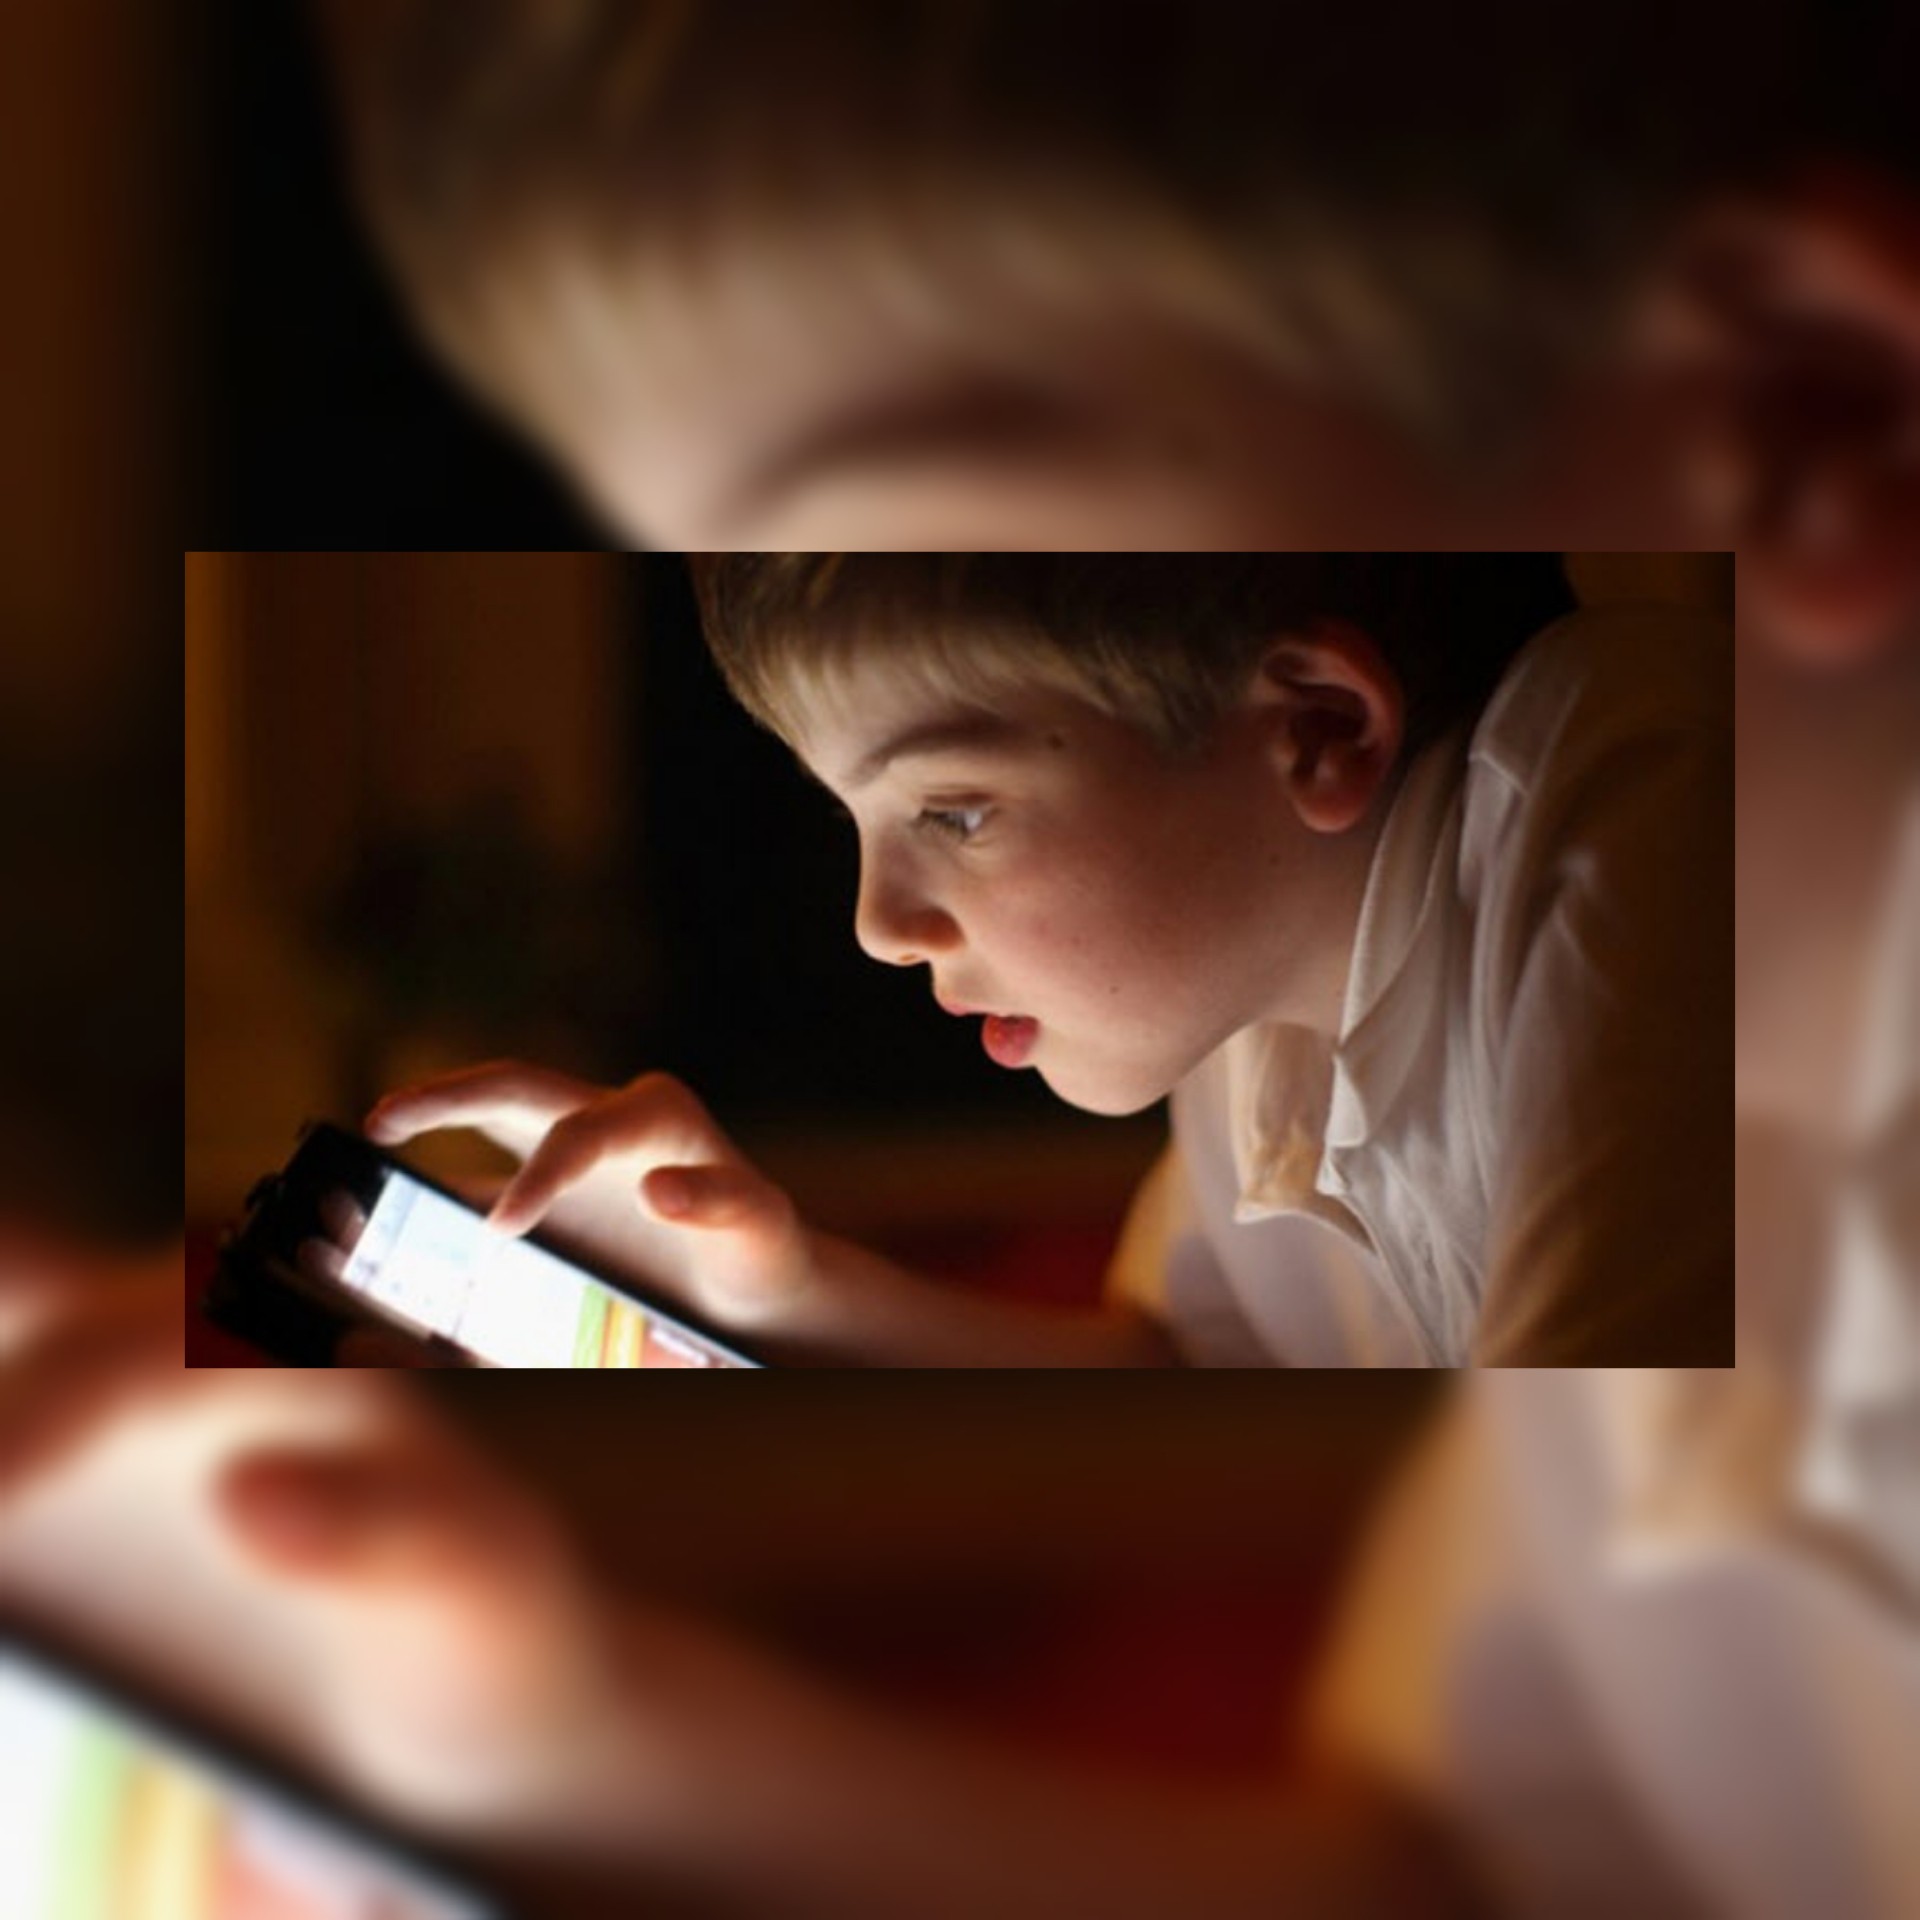 الأجهزة الإلكترونية وتأثيرها على الأطفال